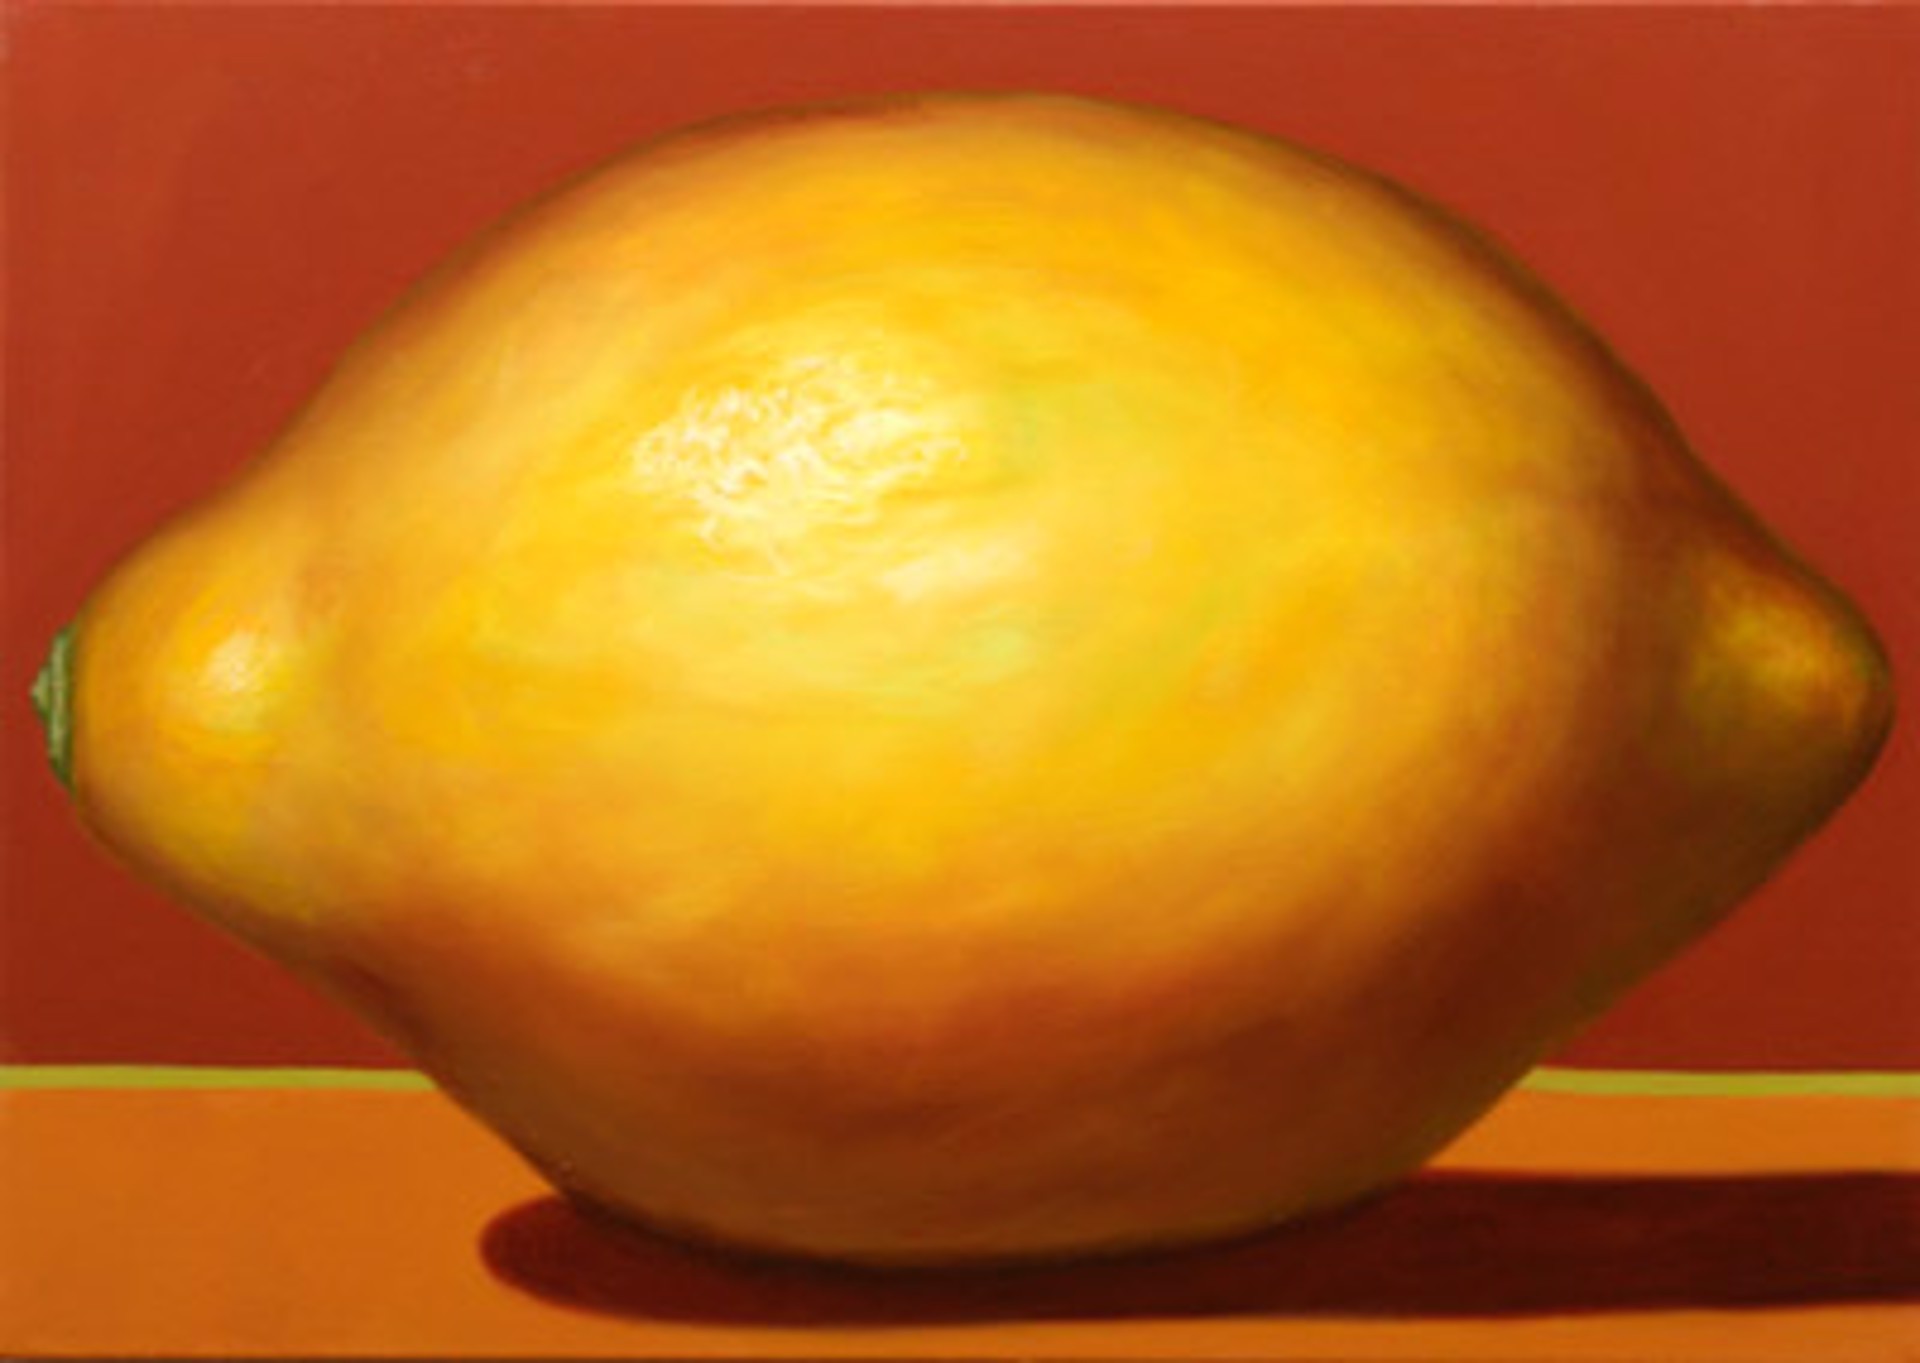 Lemon on Sienna by Bill Chisholm